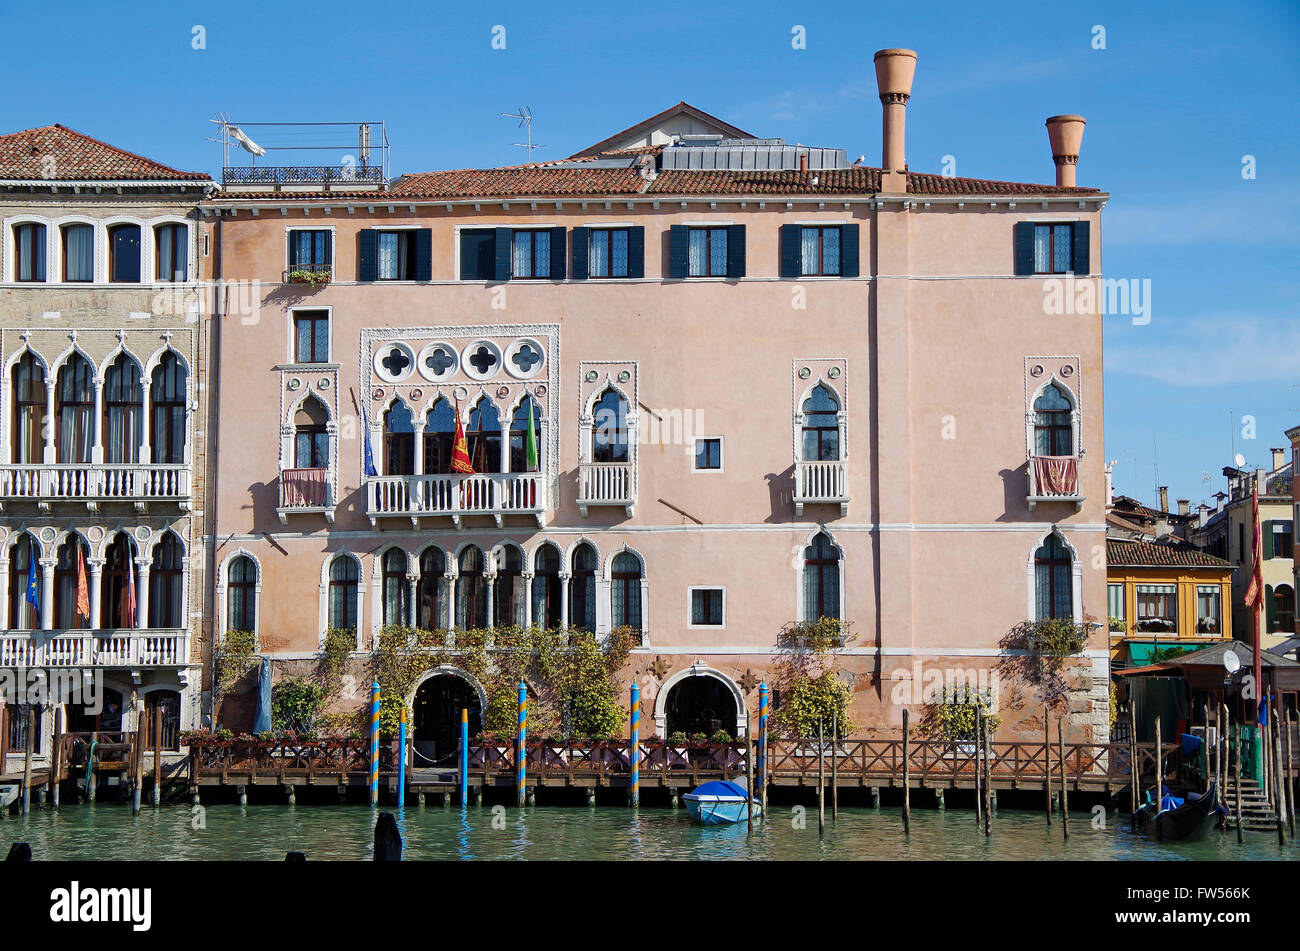 Venice Italy Palazzo Morosini Sagredo, Grand Canal Stock Photo